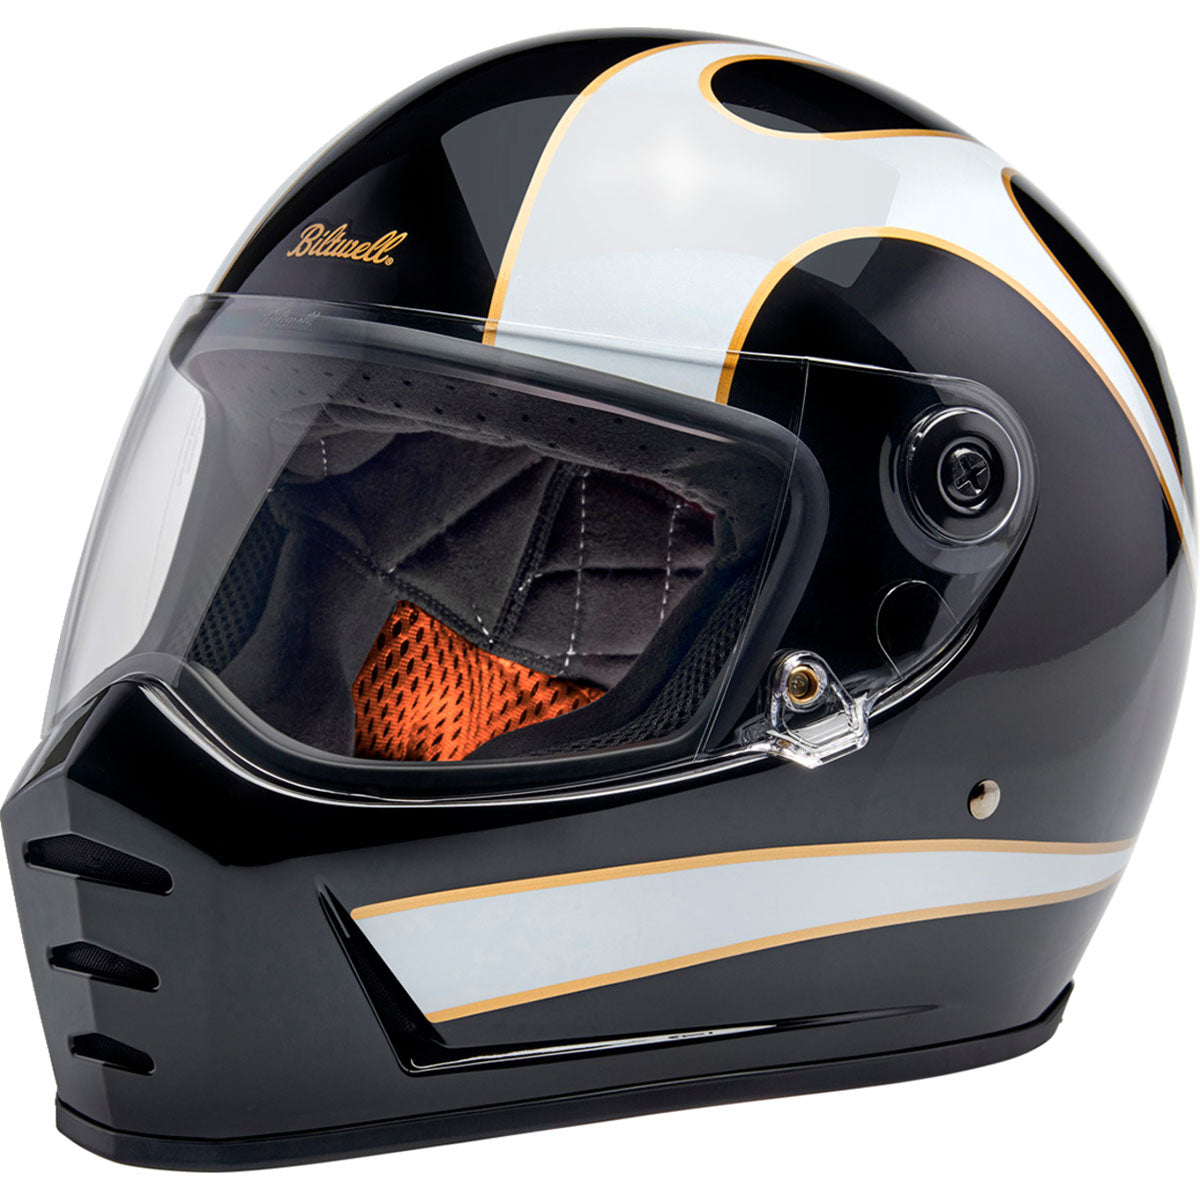 Biltwell Lane Splitter Helmet - Gloss Black/White Flames